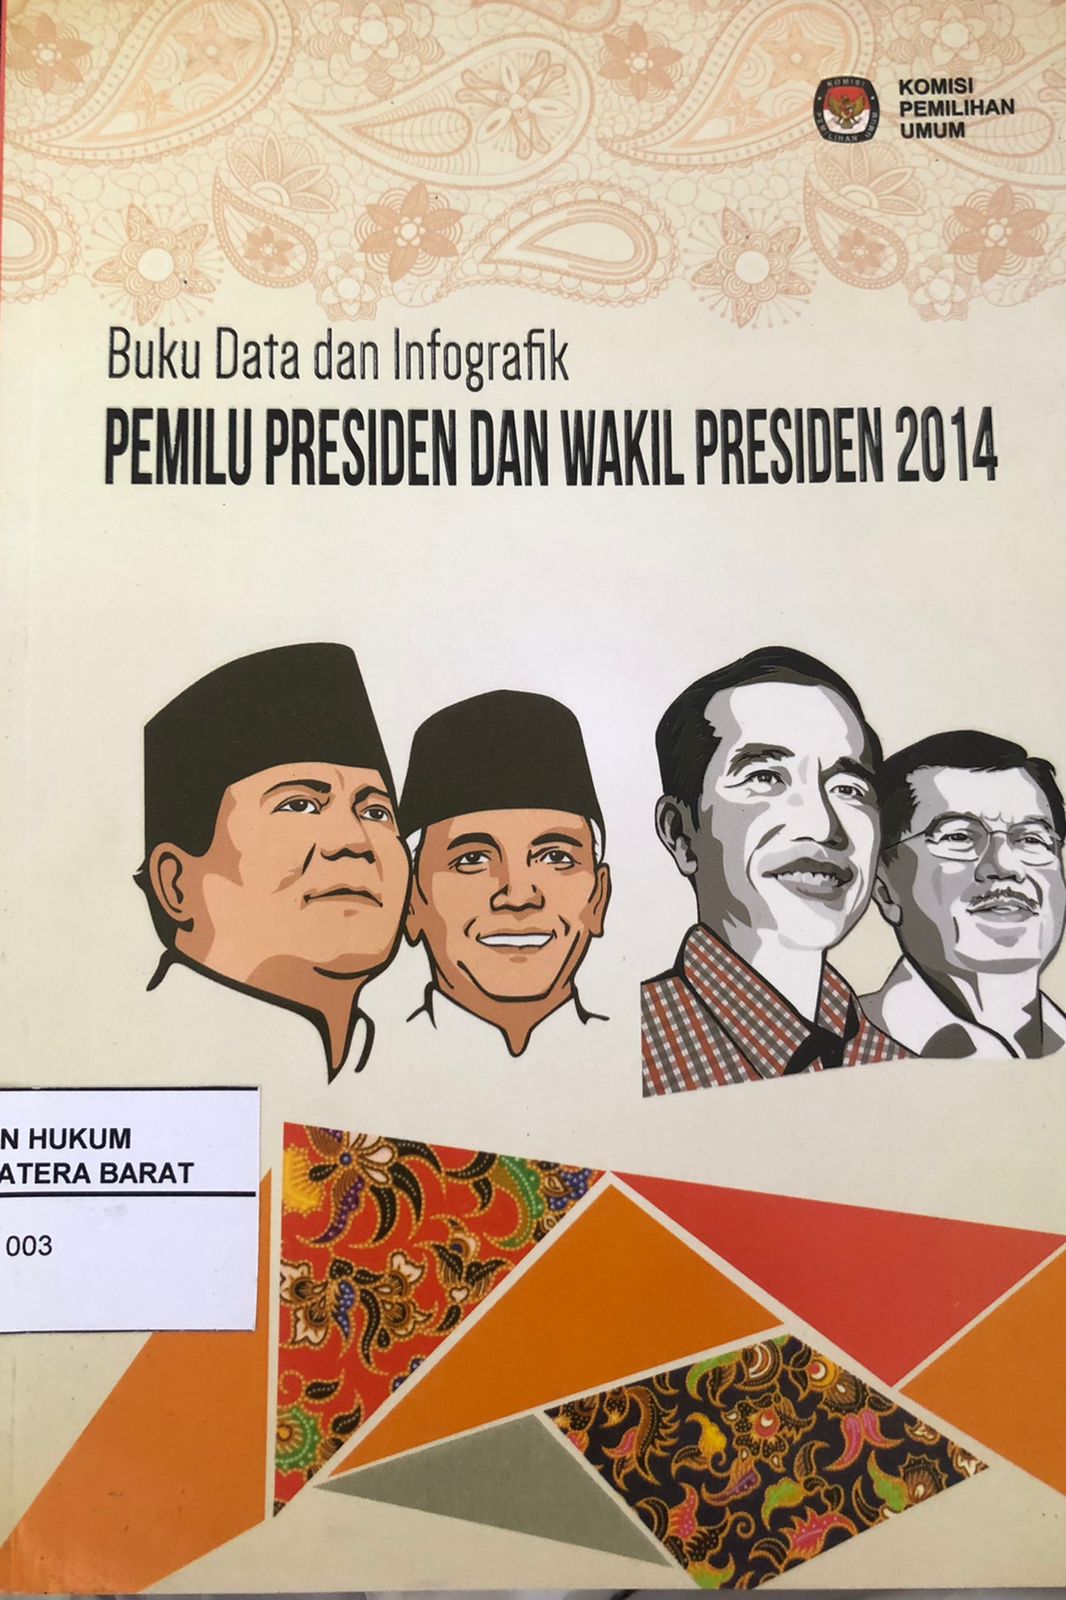 Buku Data dan Infografik Pemilu Presiden Dan Wakil Presiden 2014